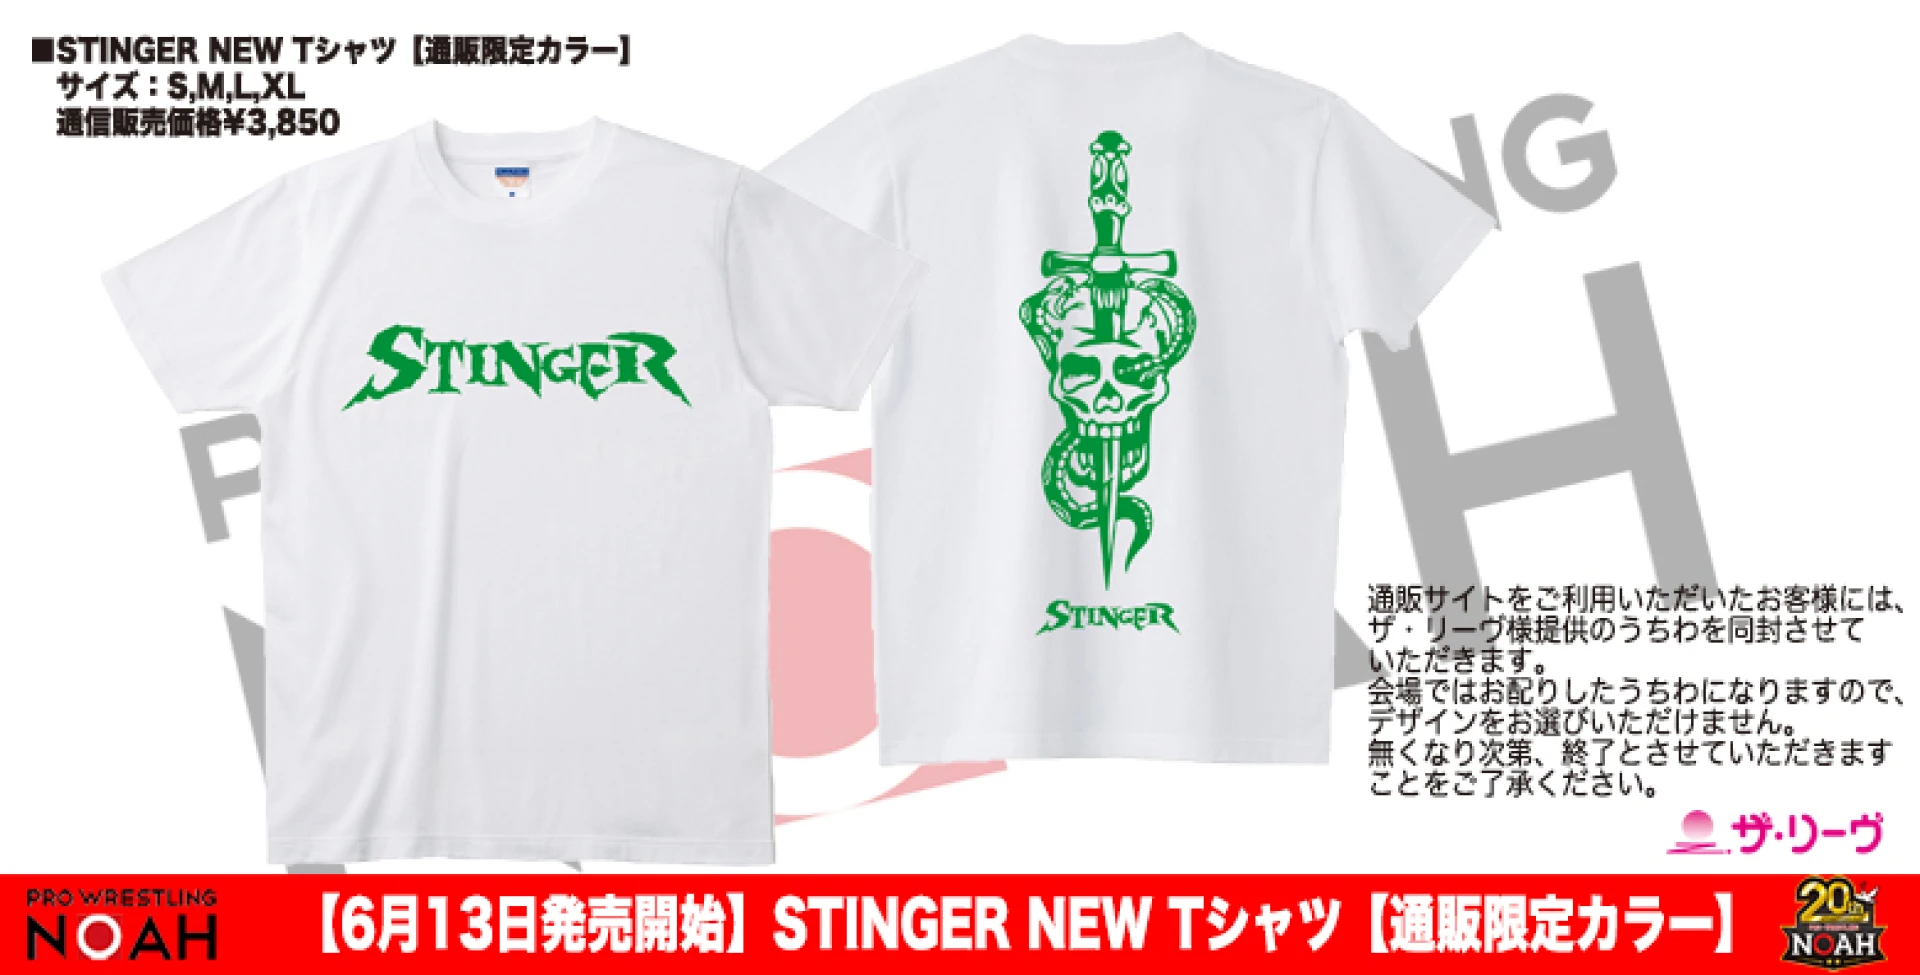 【6月13日販売開始】STINGER NEW Tシャツ 枚数限定販売のお知らせ